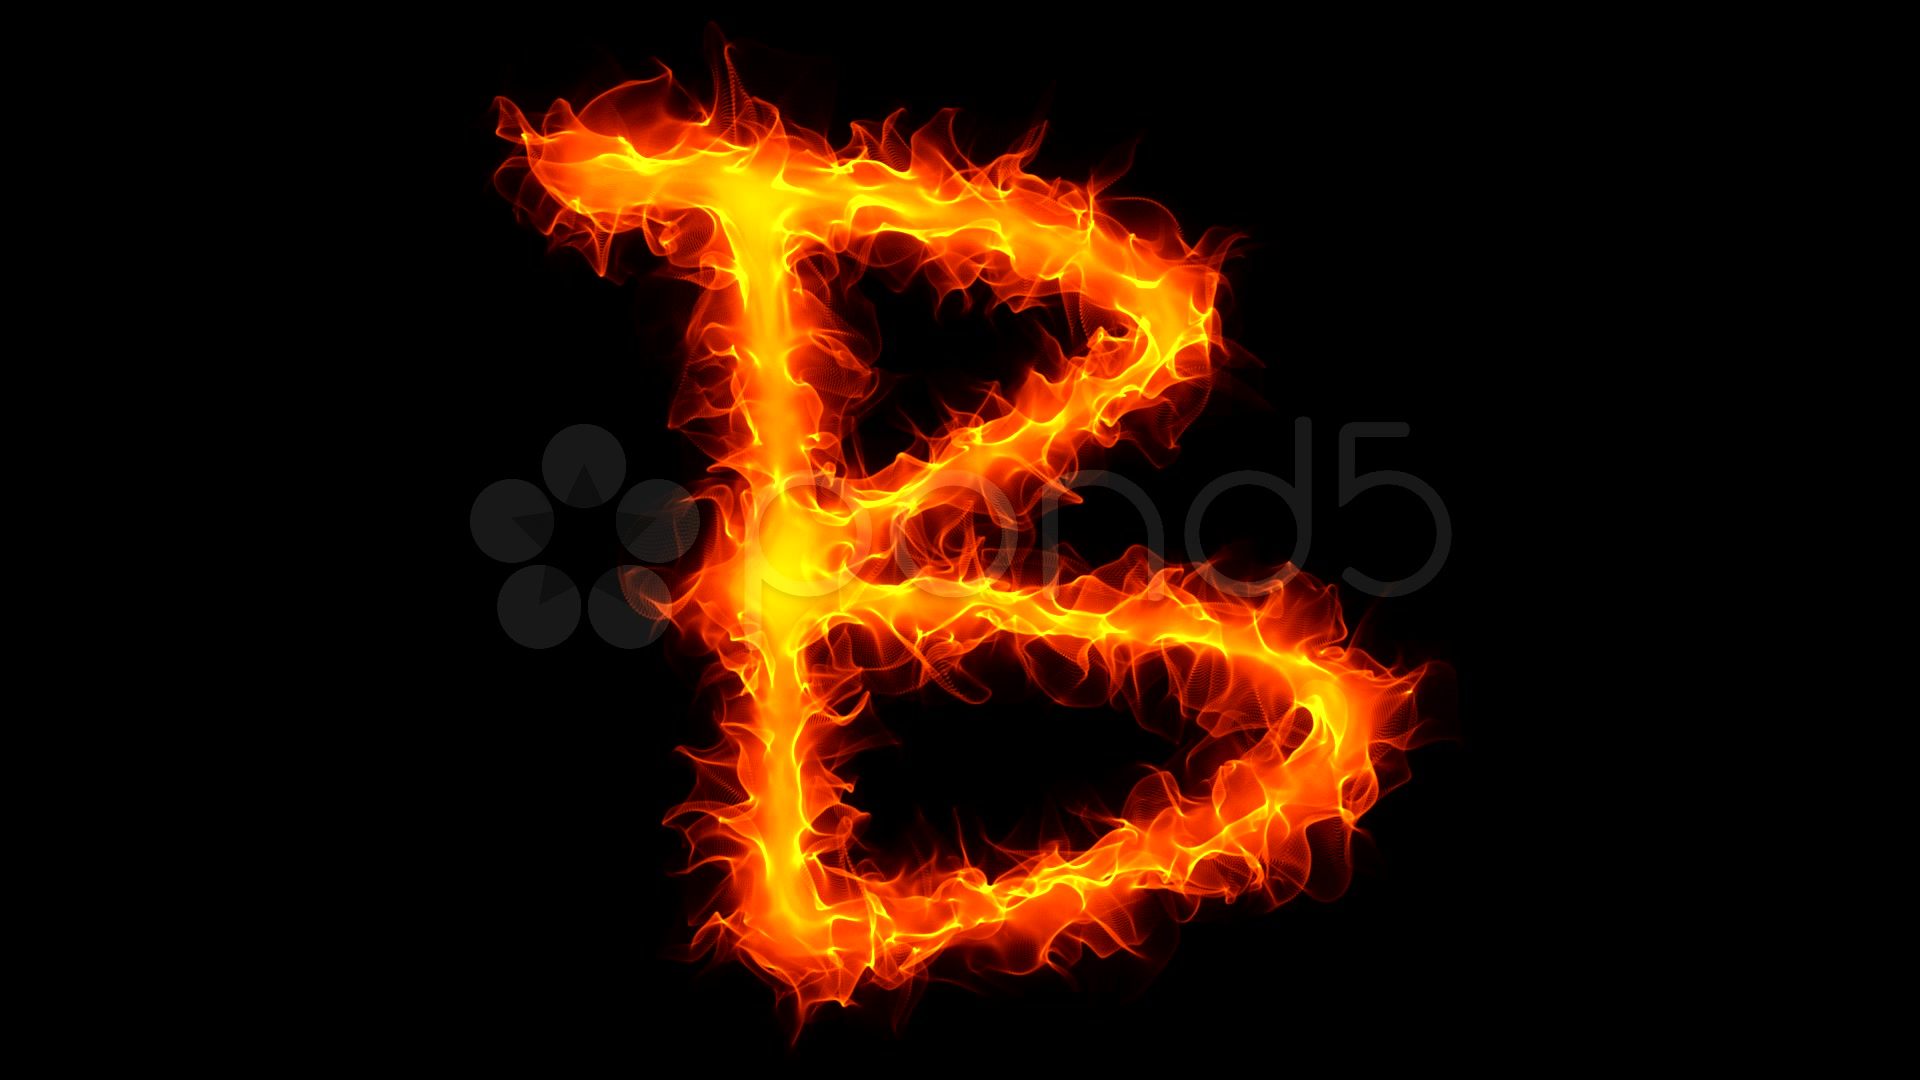 Letter B Wallpaper Fire letter b graffiti